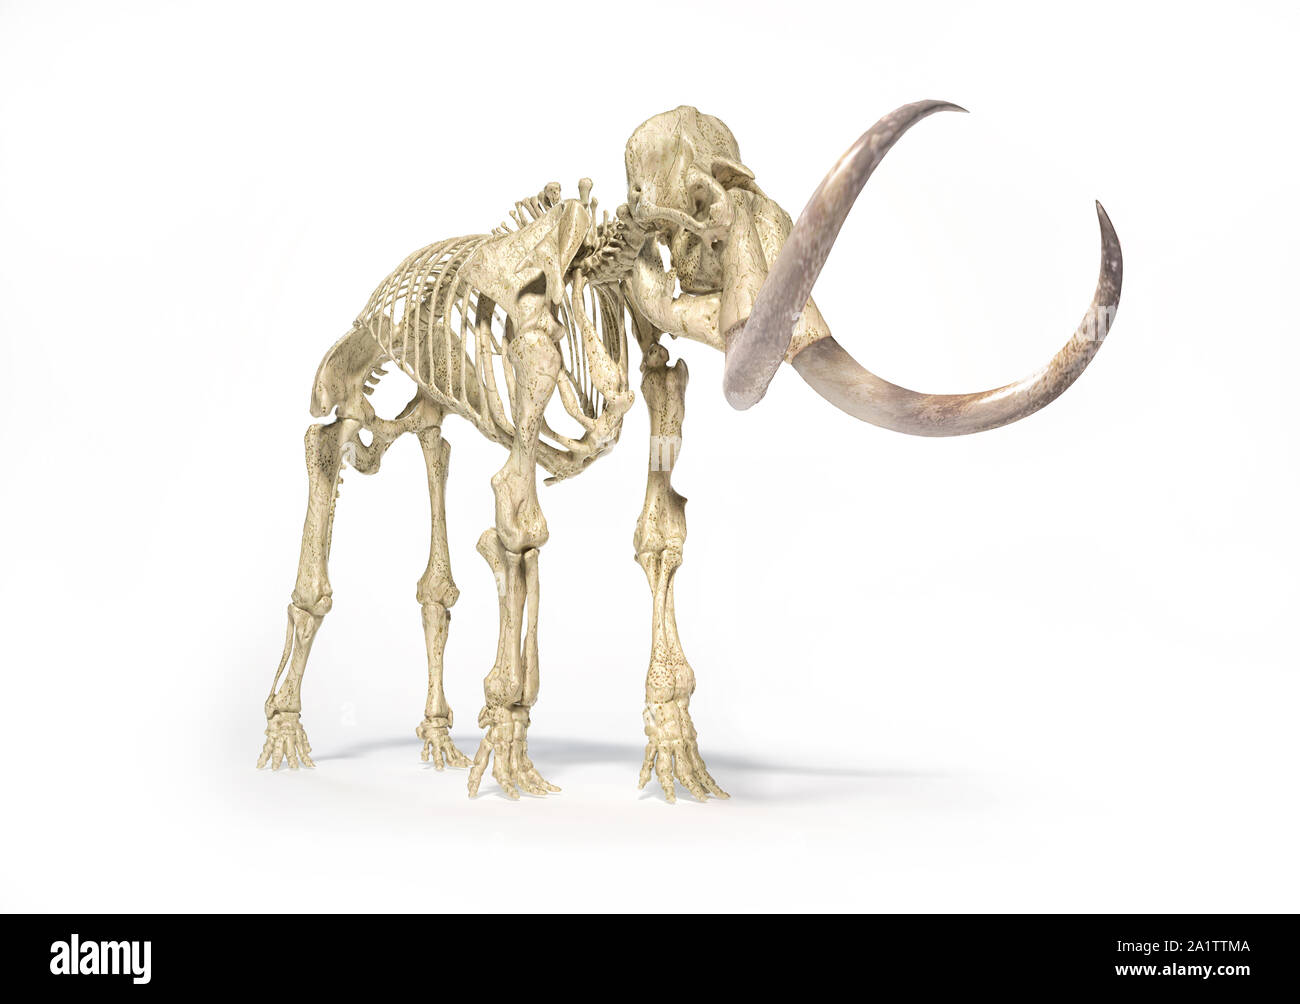 Woolly mammoth Skelett, realistische 3D-Darstellung, die aus der Perspektive vorne gesehen. Auf weissem Hintergrund und ließ Schatten. Stockfoto